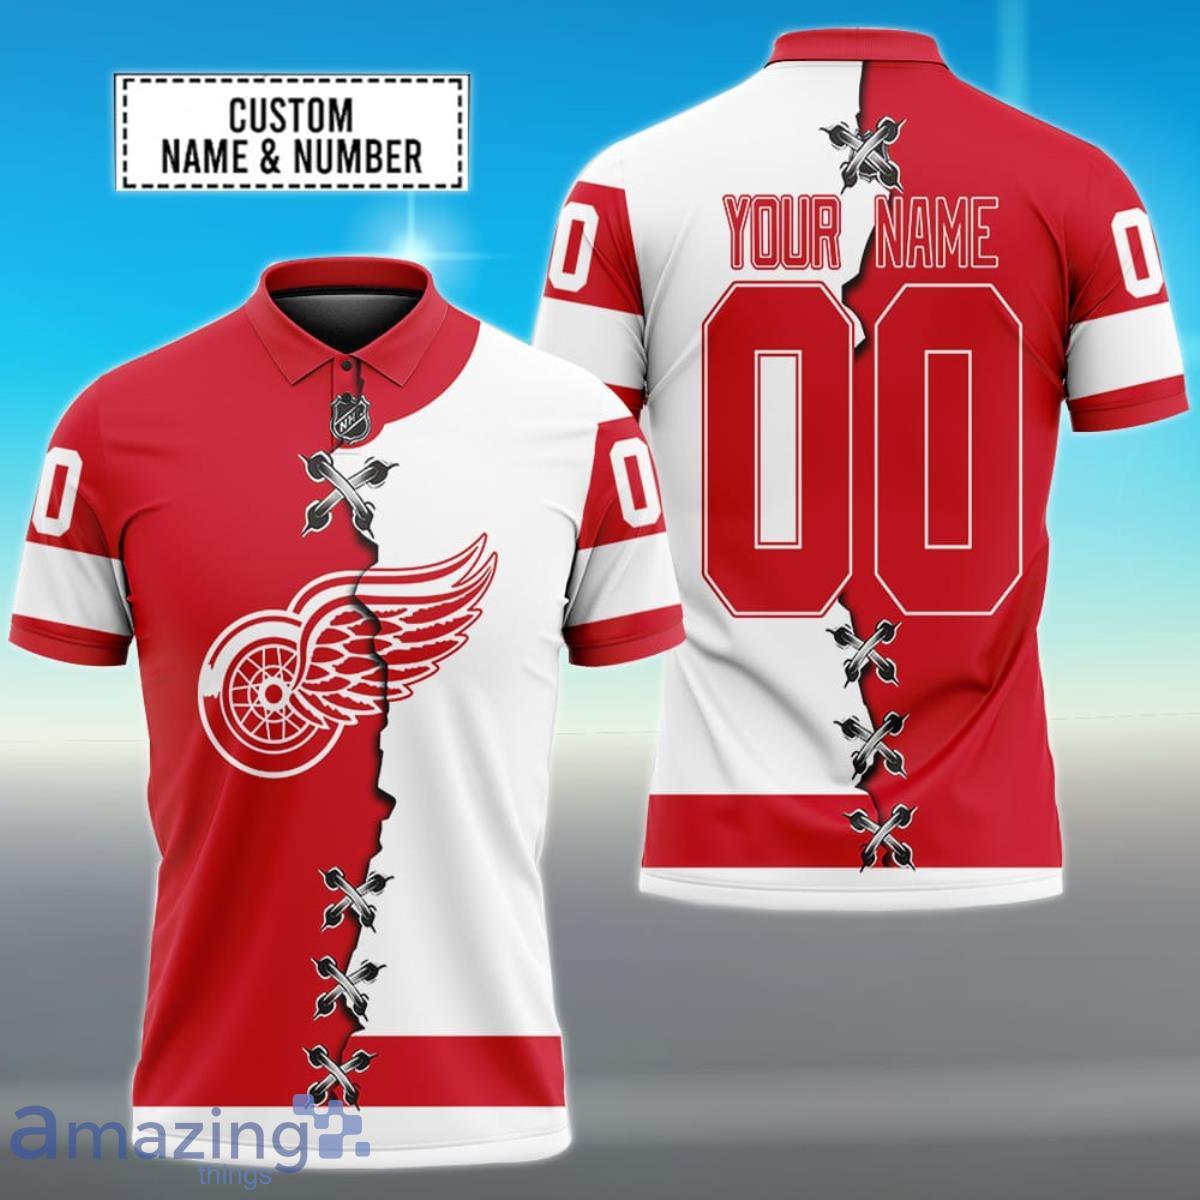 Detroit Red Wings custom jersey